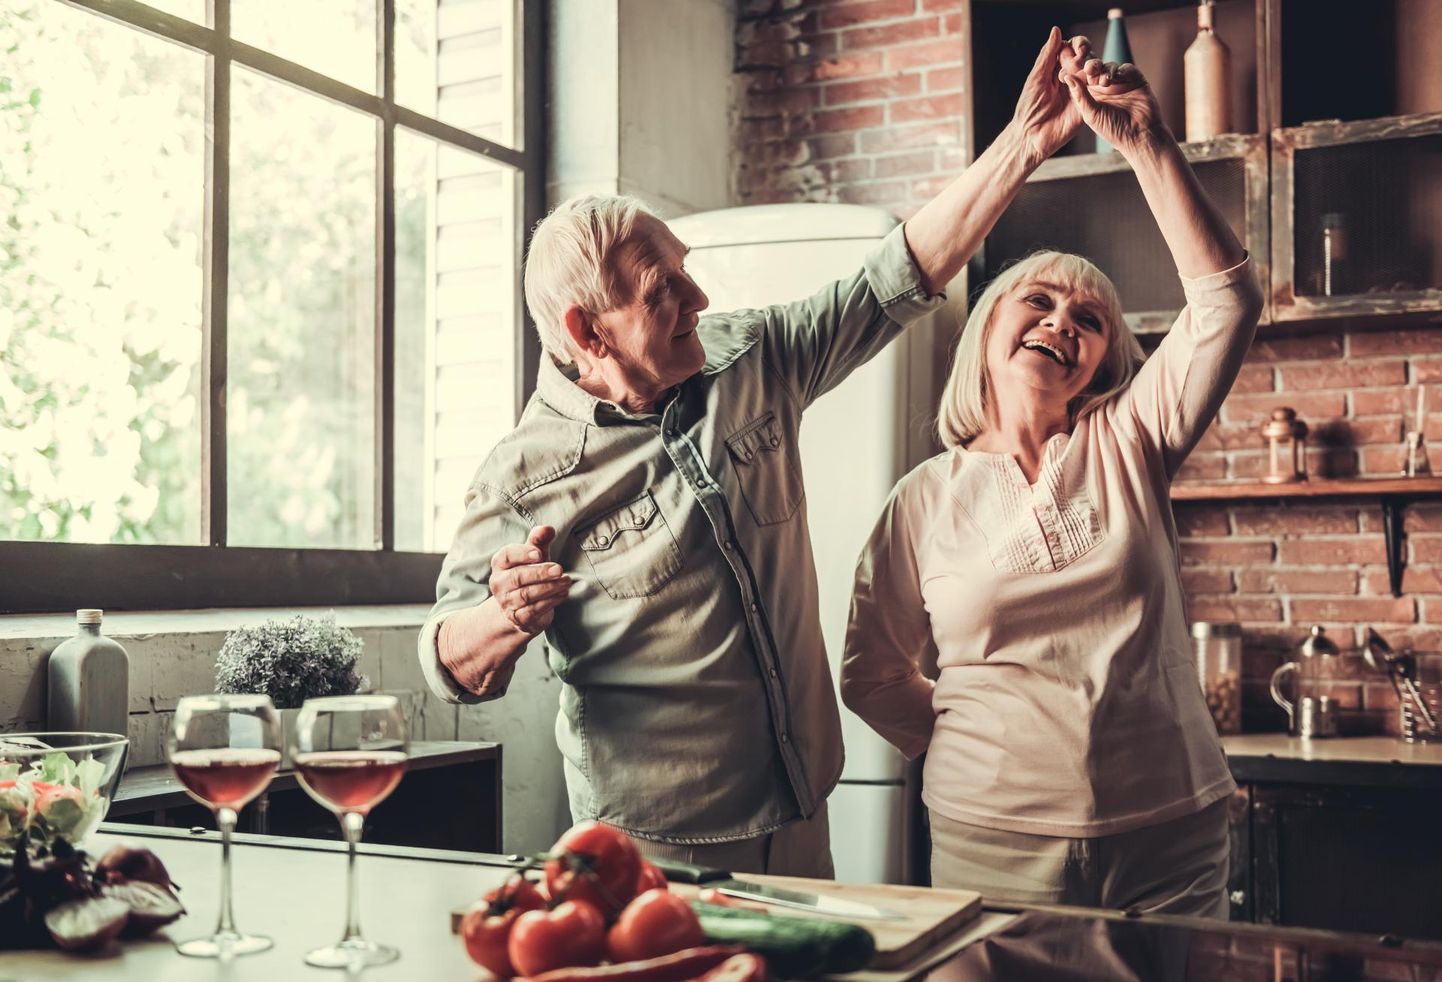 Vanapaarid, kes on koos olnud 50–70 aastat, ilmutavad suuremat eluga rahulolu kui karjääriredelil kõrgele jõudnud miljonärid.